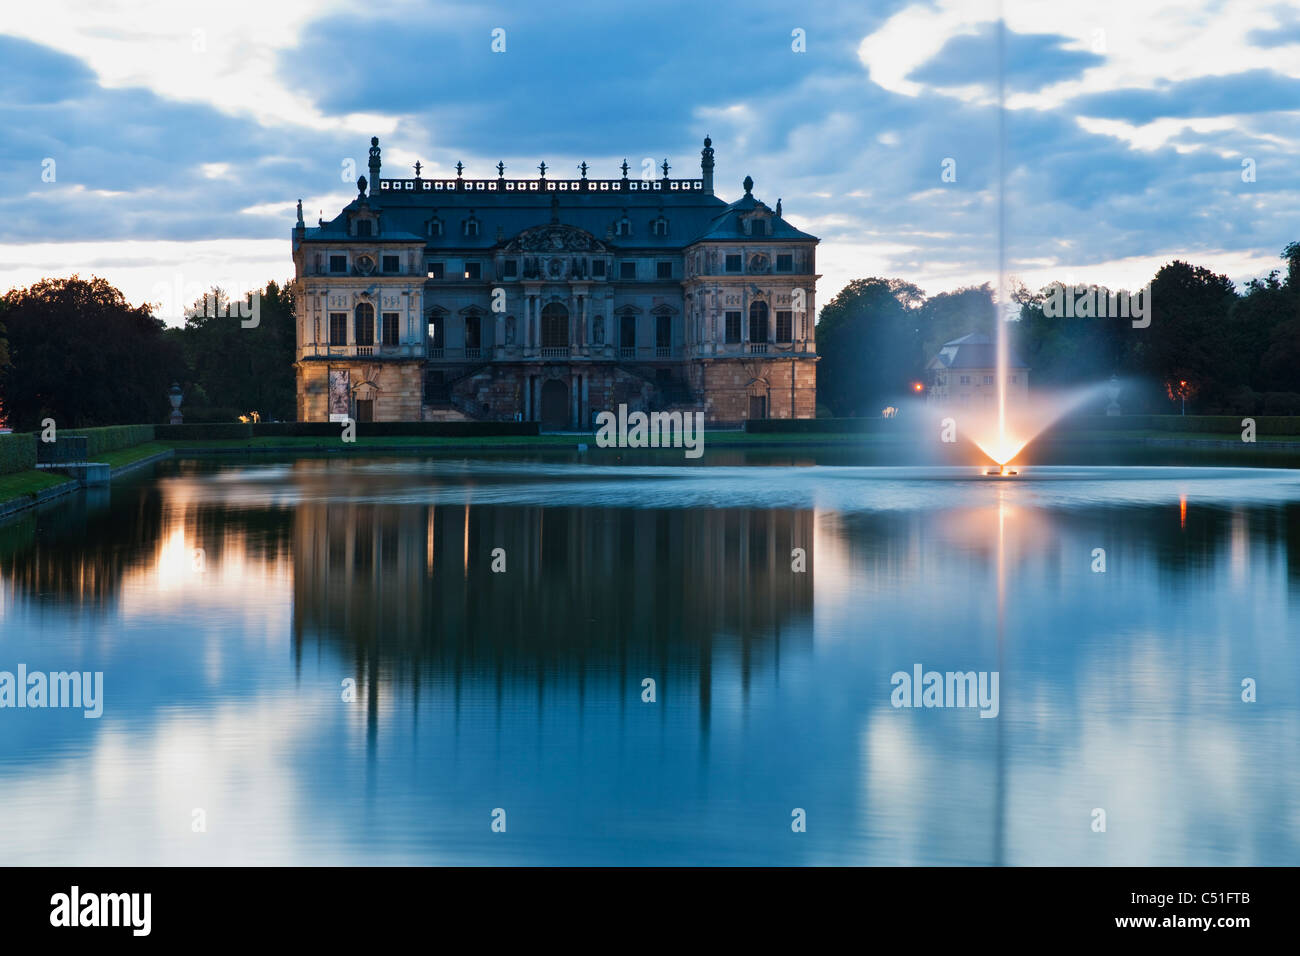 Palais im Großen Garten Dresden | palace in the grosse garten park Dresden Stock Photo